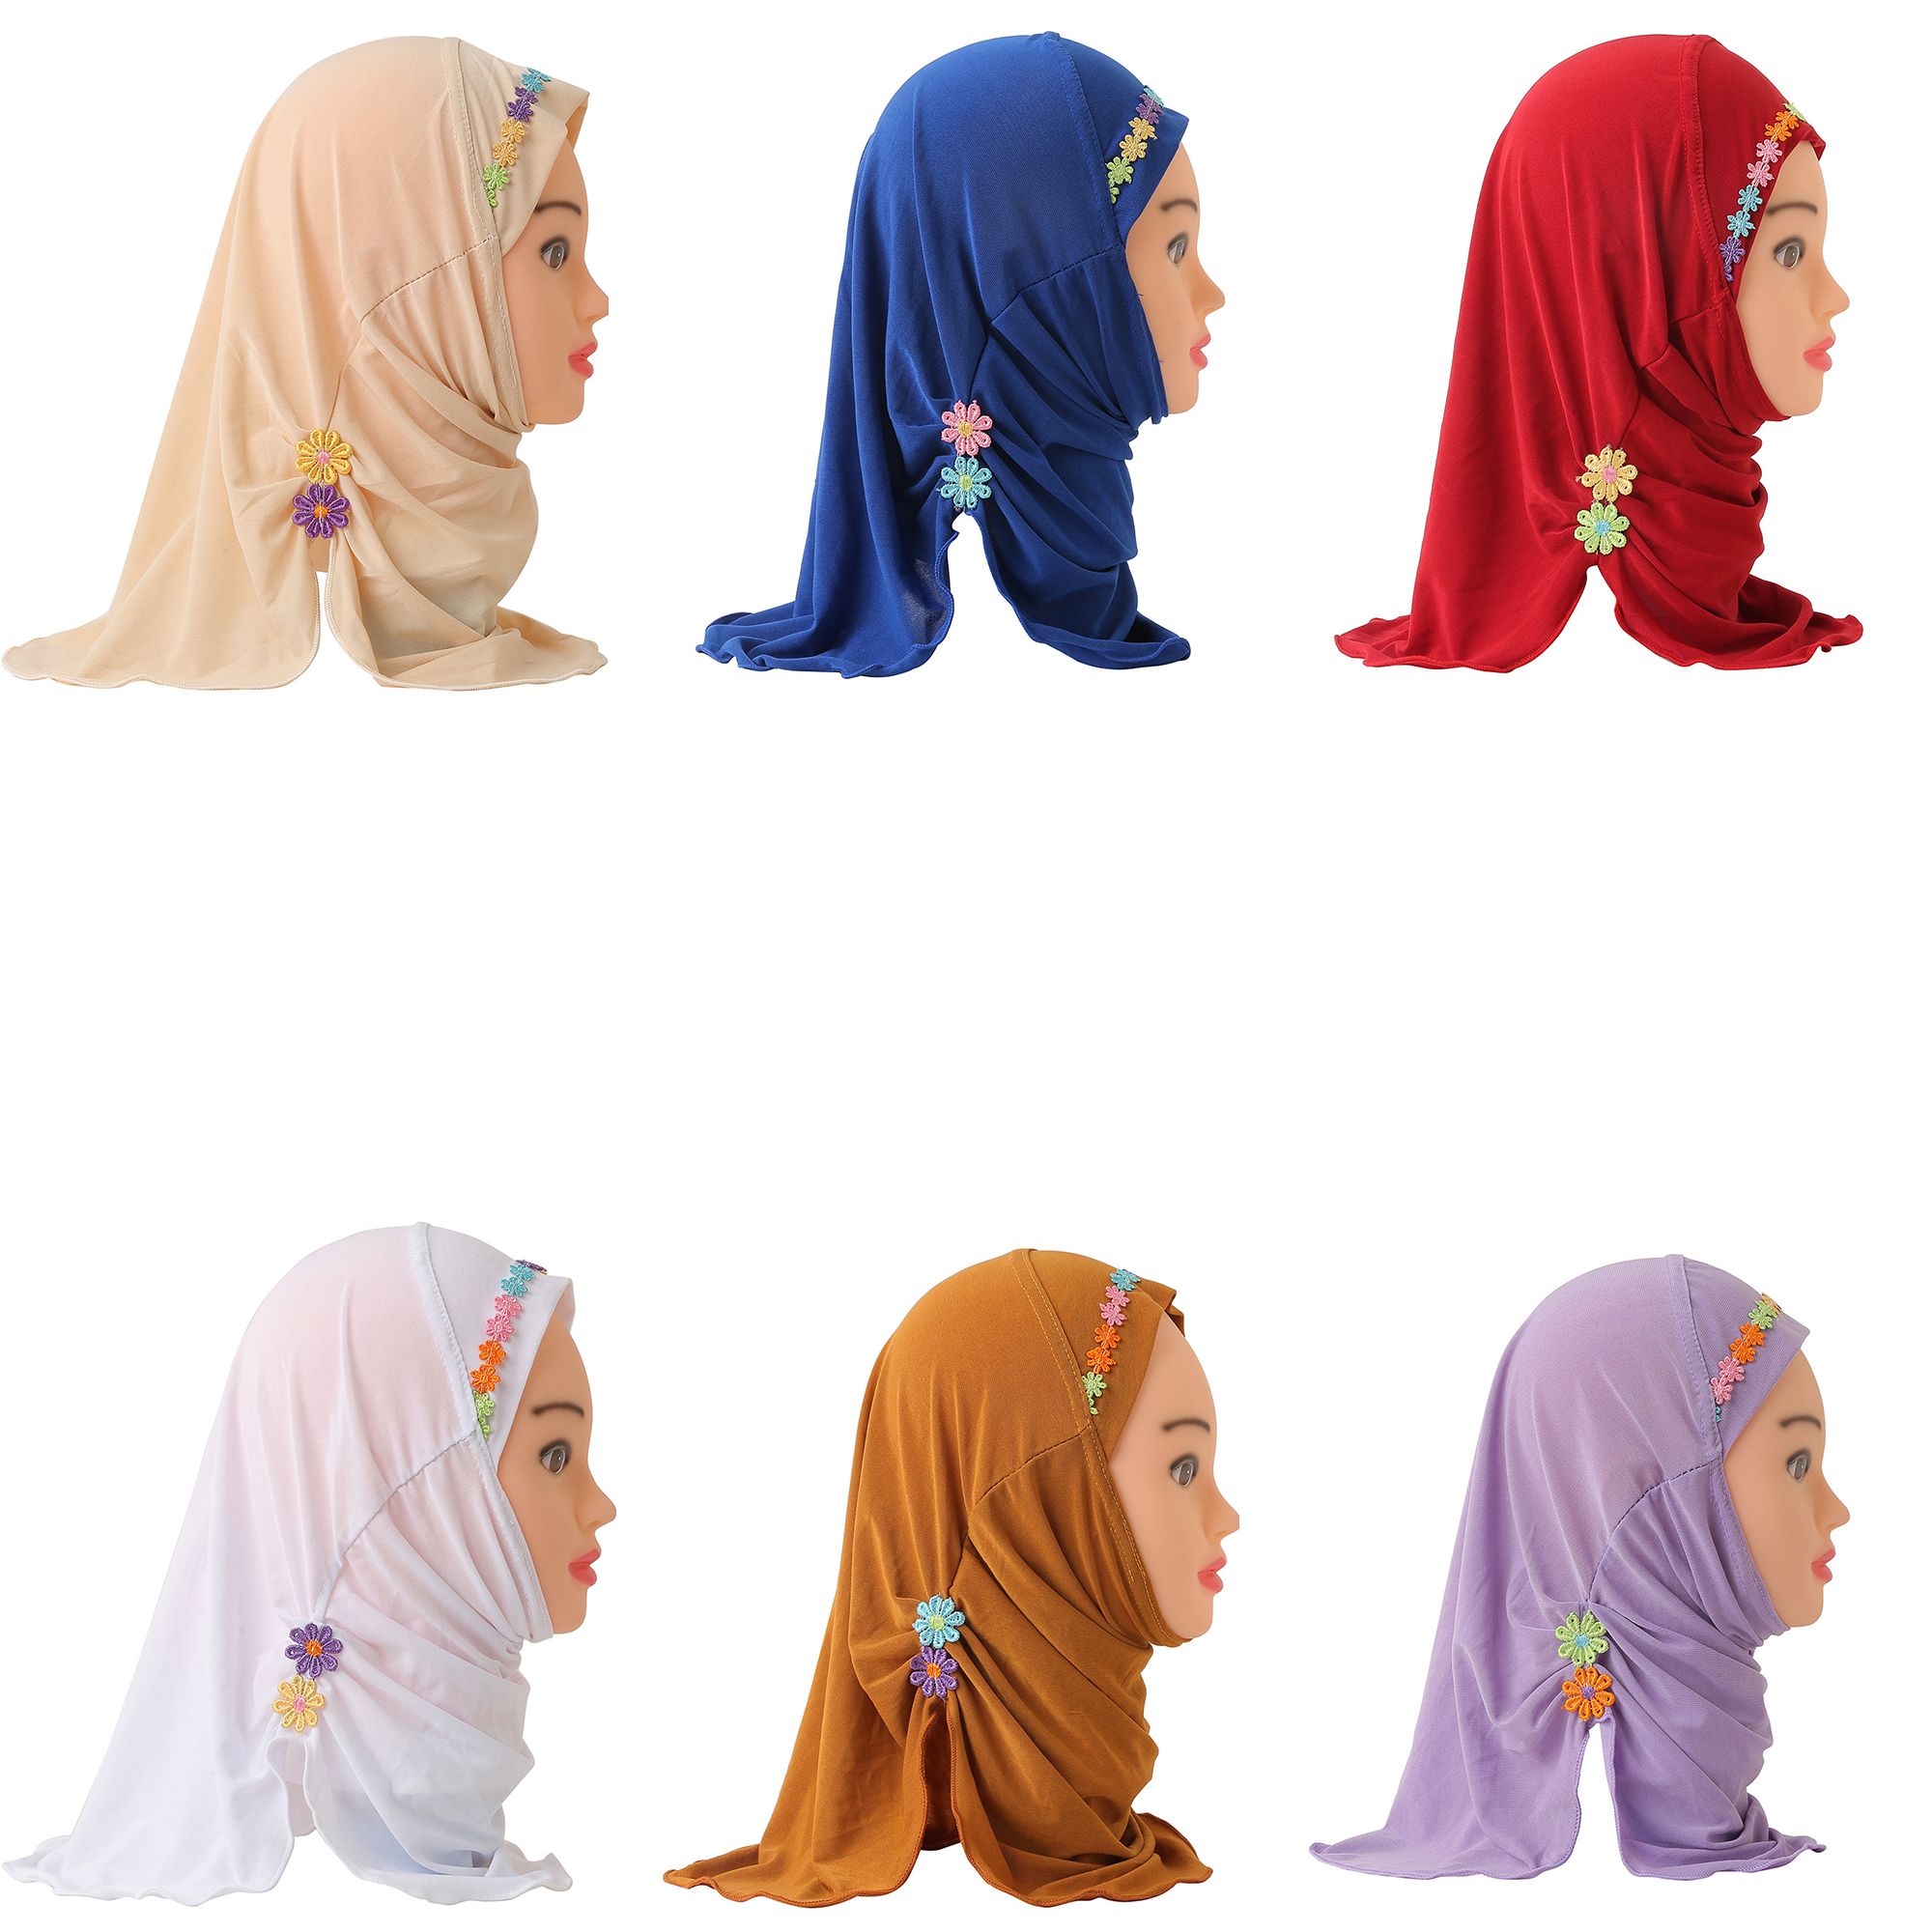 ELEGANCE STUDIO Các cô gái 2-6 năm tuổi Hoa văn Khăn trùm đầu Khăn choàng Hồi giáo Khăn trùm đầu đẹp của người Hồi giáo Kéo trên chiếc khăn Hồi giáo Khăn quàng cổ của người Ả Rập Hồi giáo